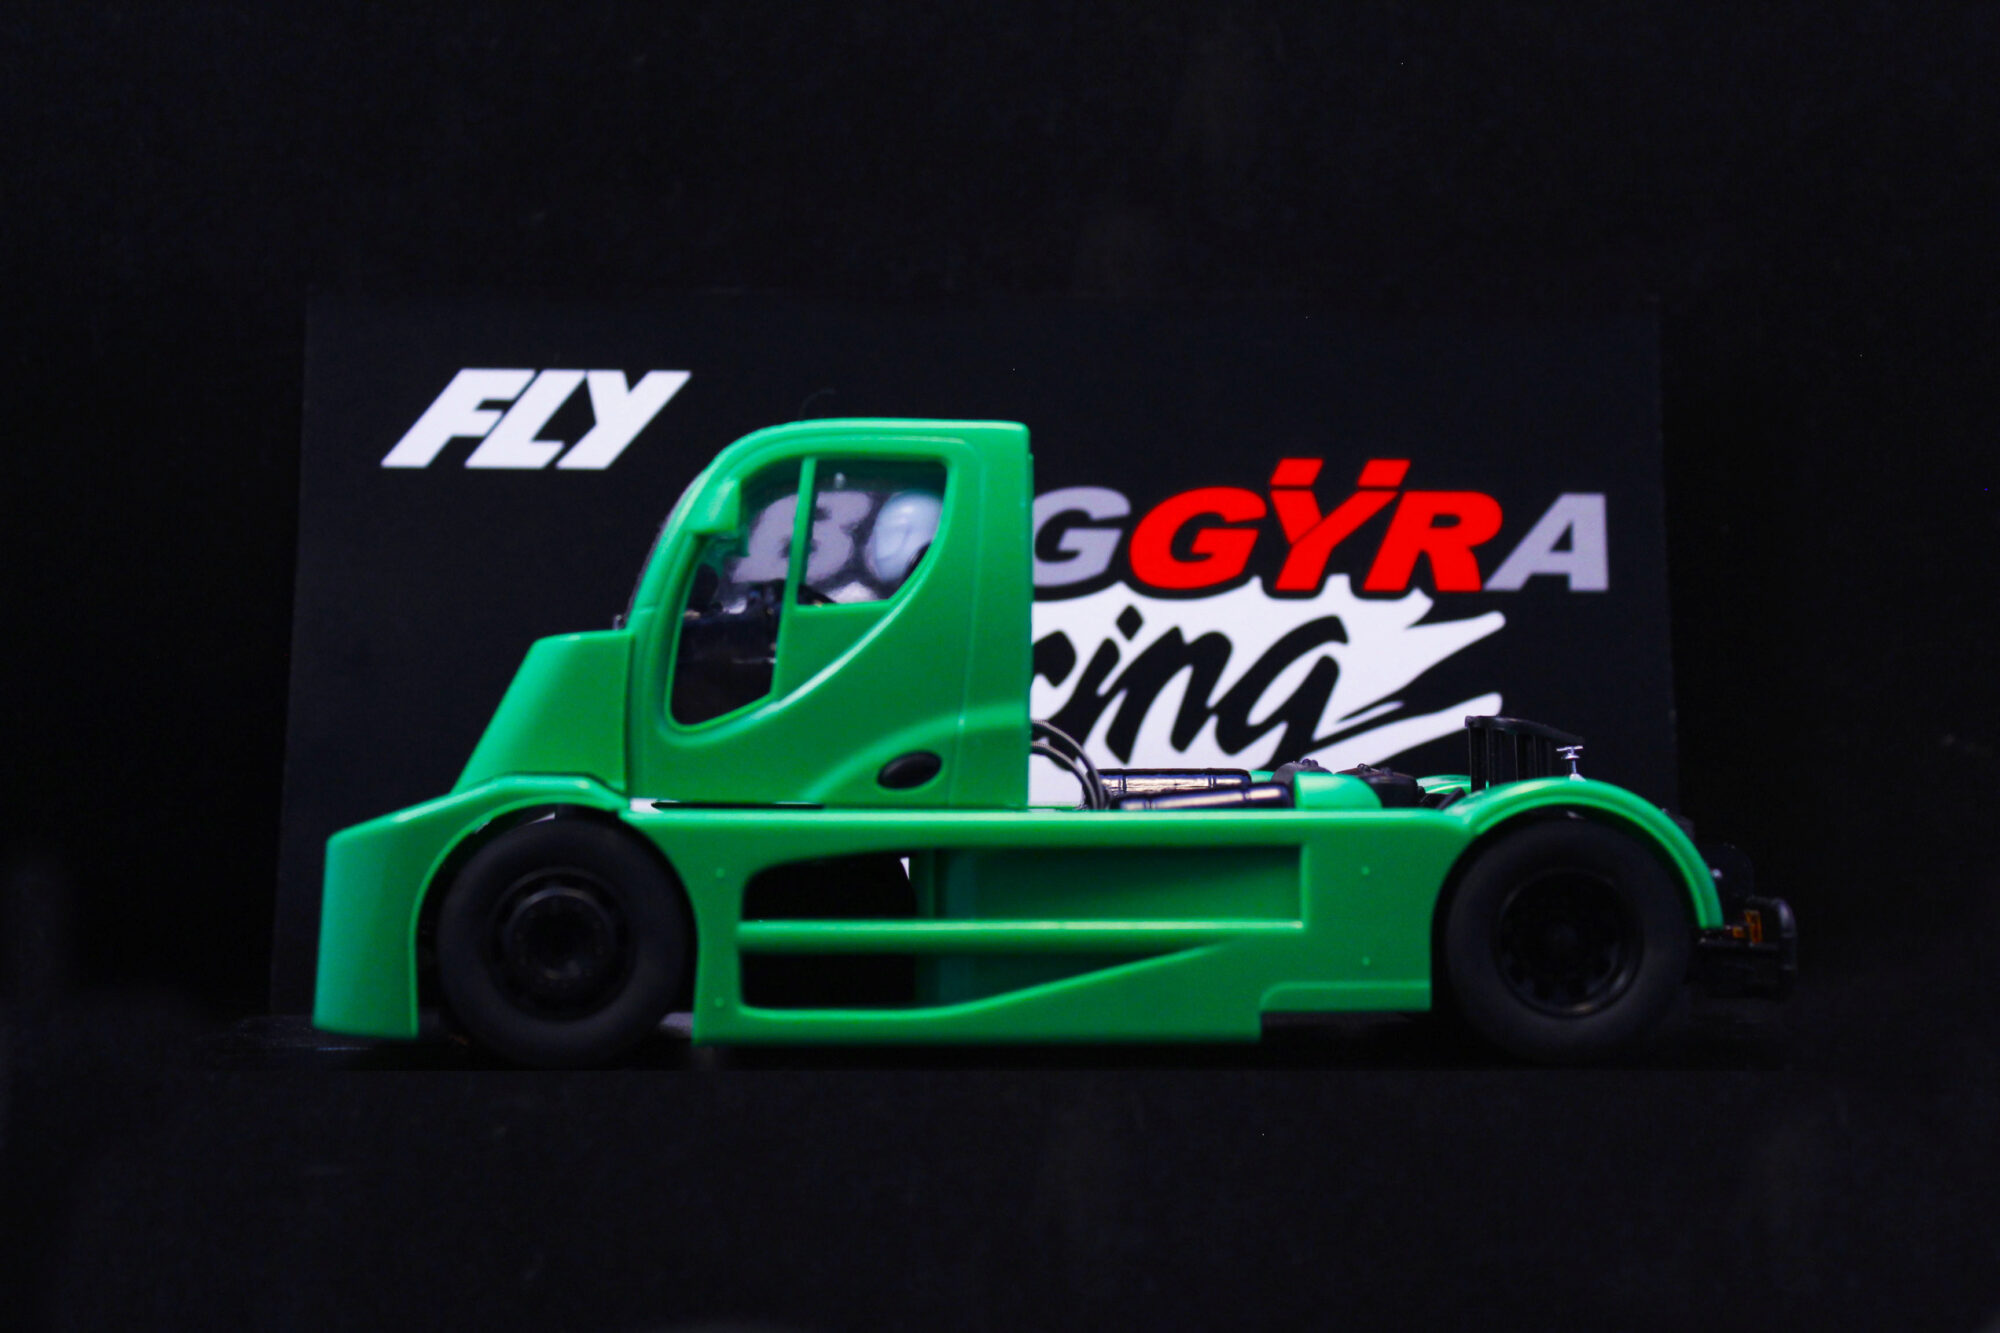 FLY CAR MODELS TRUCK79 Buggyra "Lightning" Race Version Green